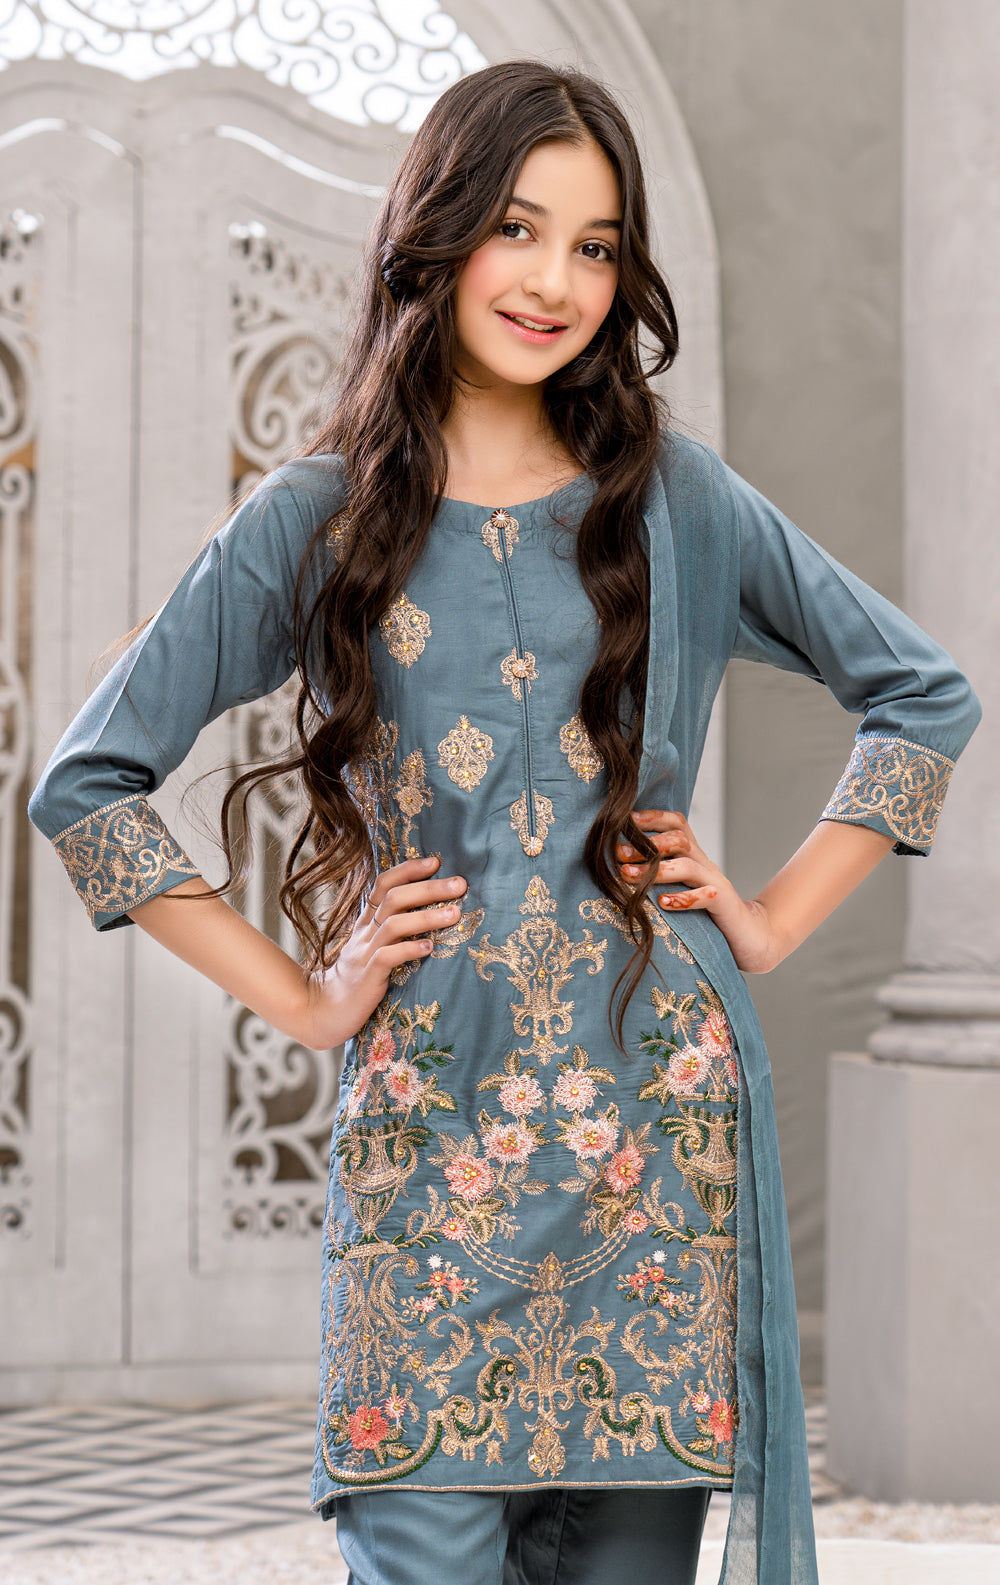 New Pakistani Party Wear Dresses Frock Collection StyleGlowcom  Pakistani  fashion casual Pakistani dress design Pakistani dresses casual